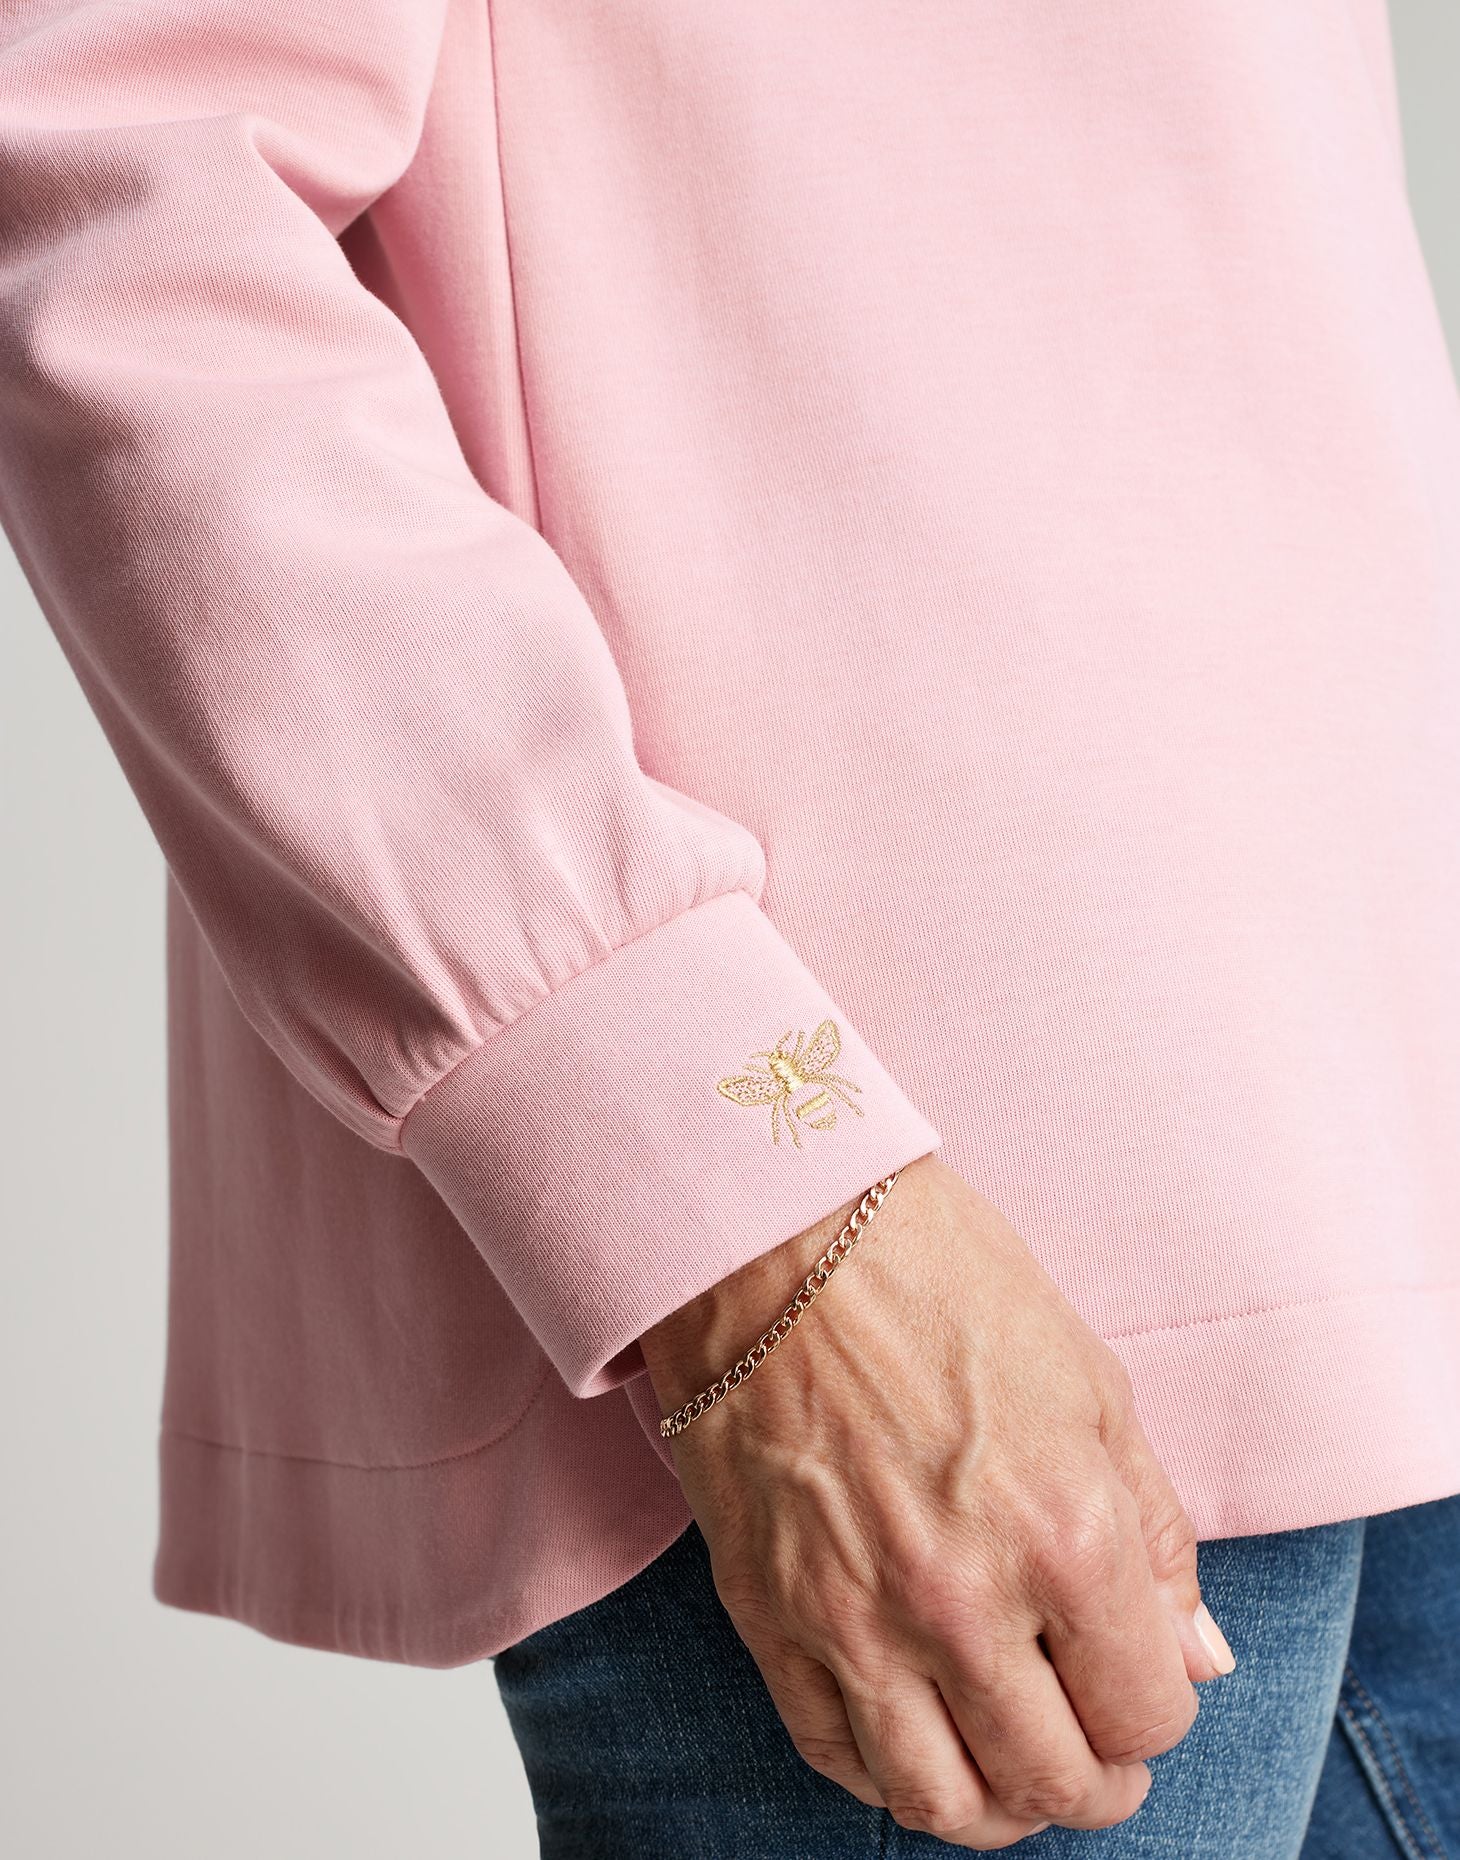 Women's Rosalyn Sweatshirt - Dawn Pink